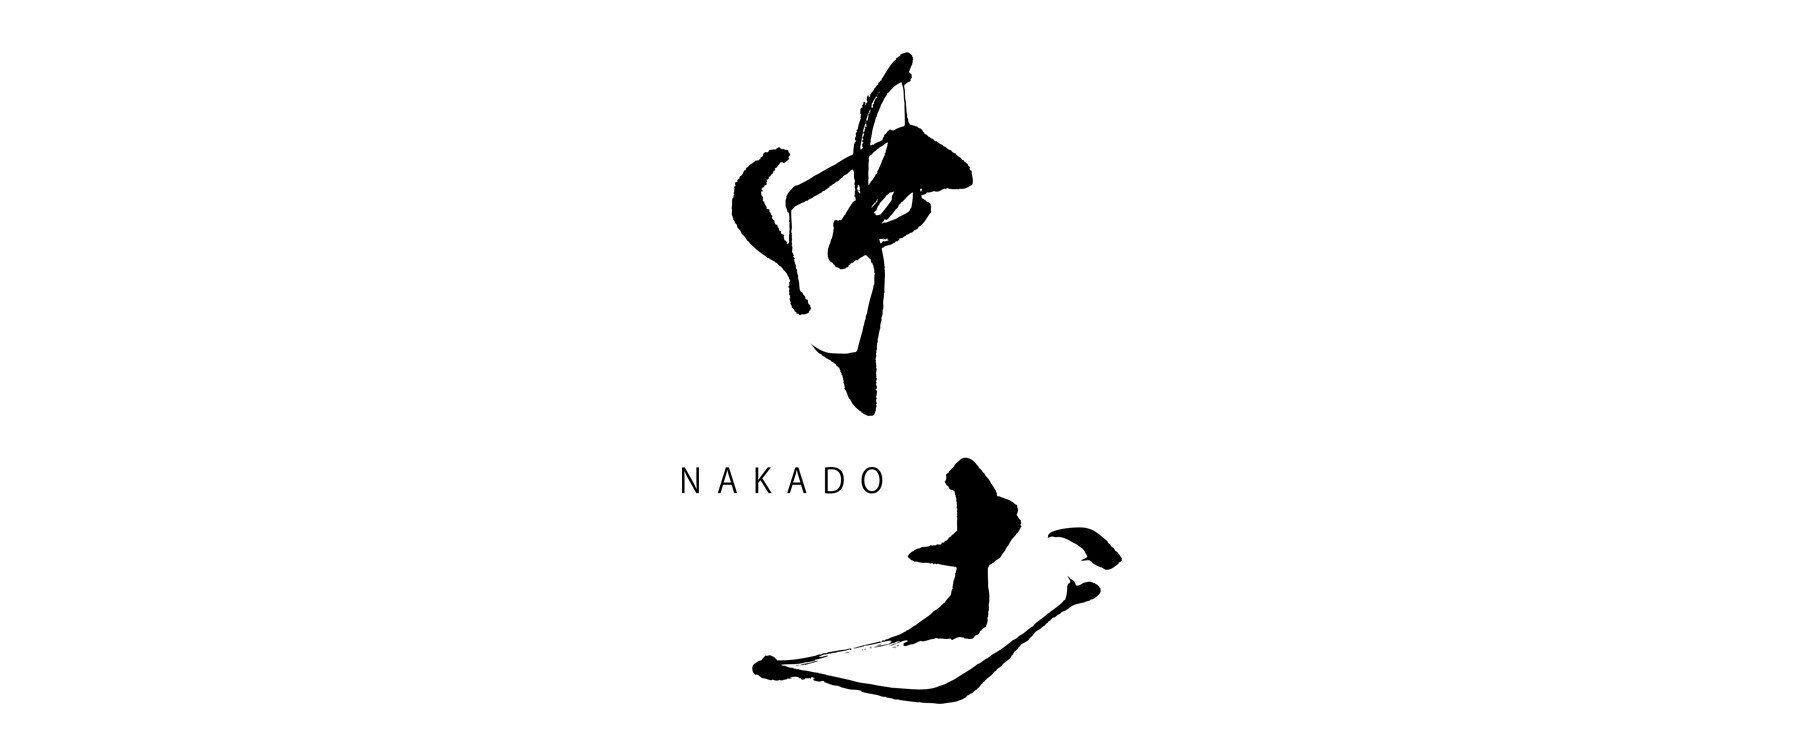 NAKADO's image 2